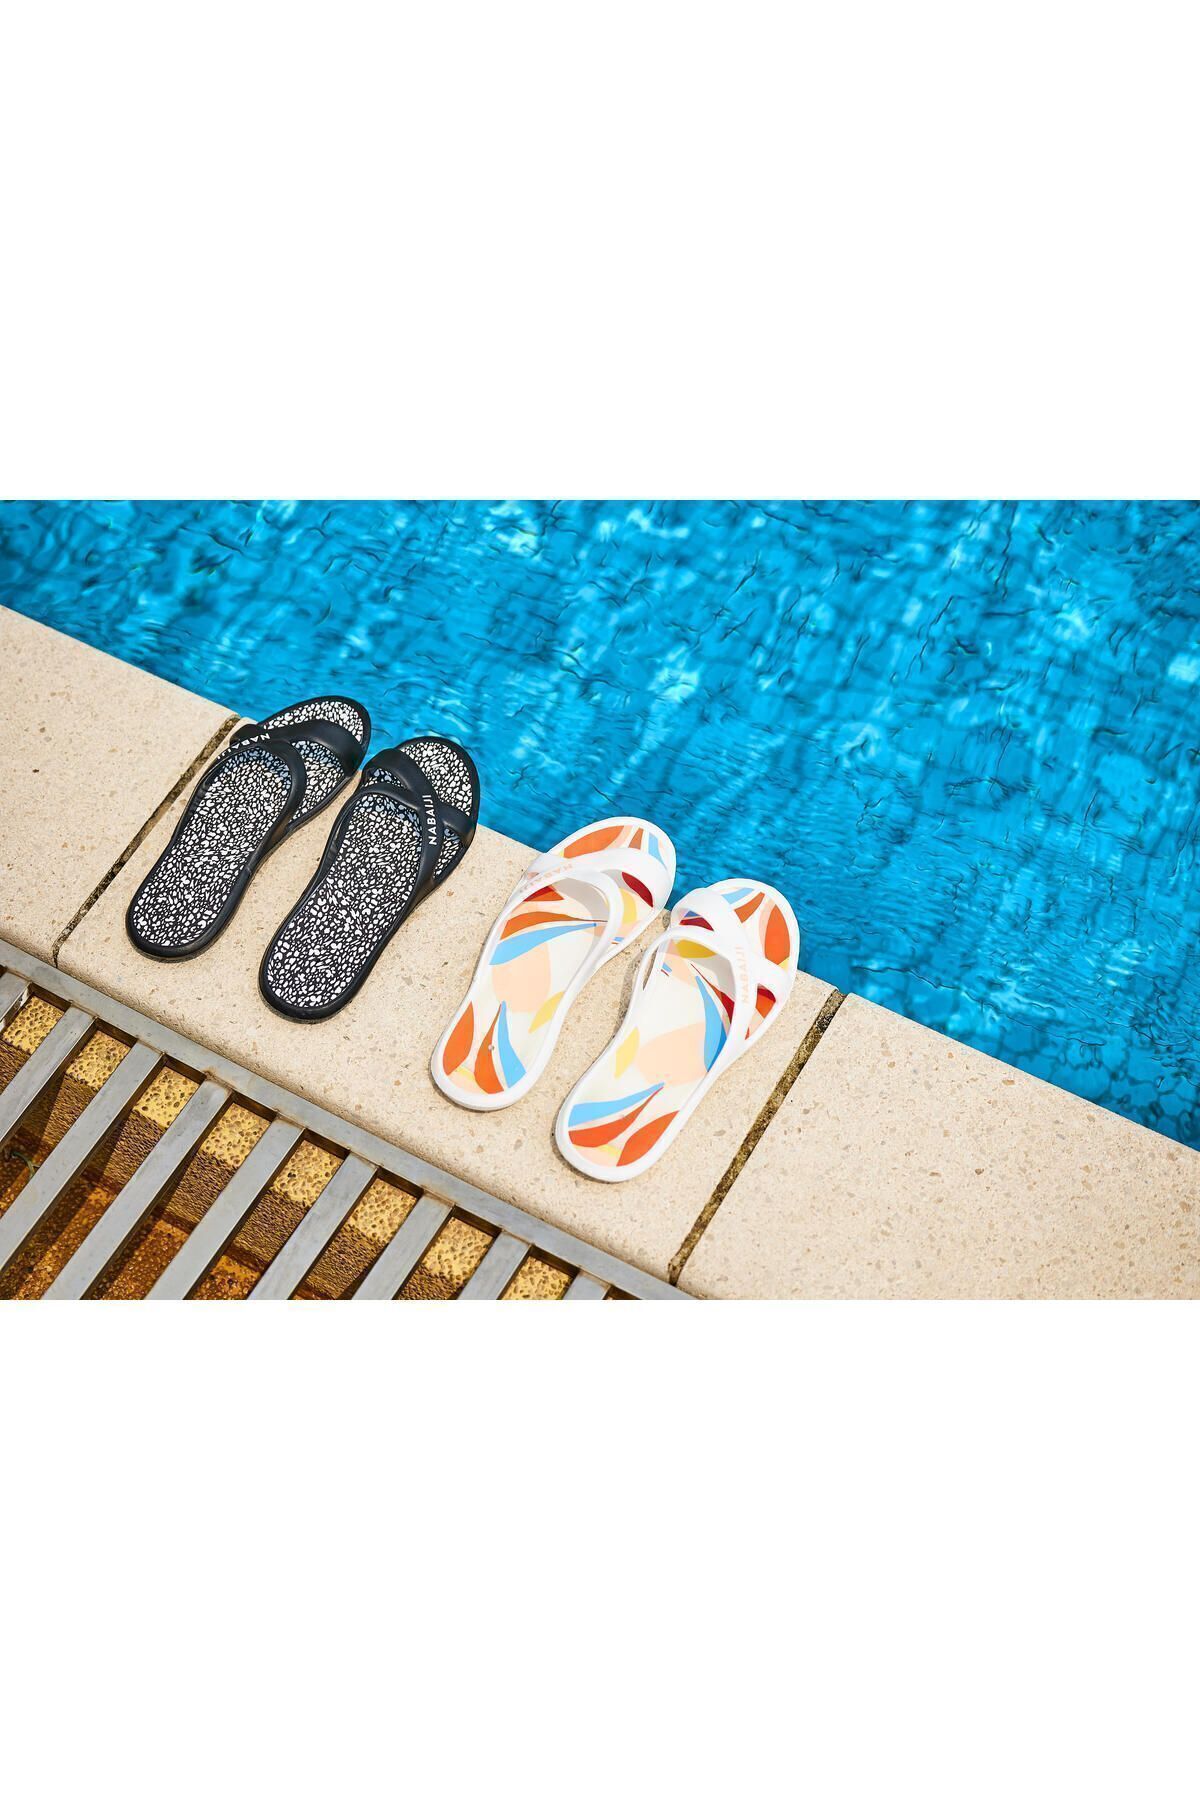 Decathlon Kadın Havuz Terliği - Beyaz / Siyah - Slap 500 Lea